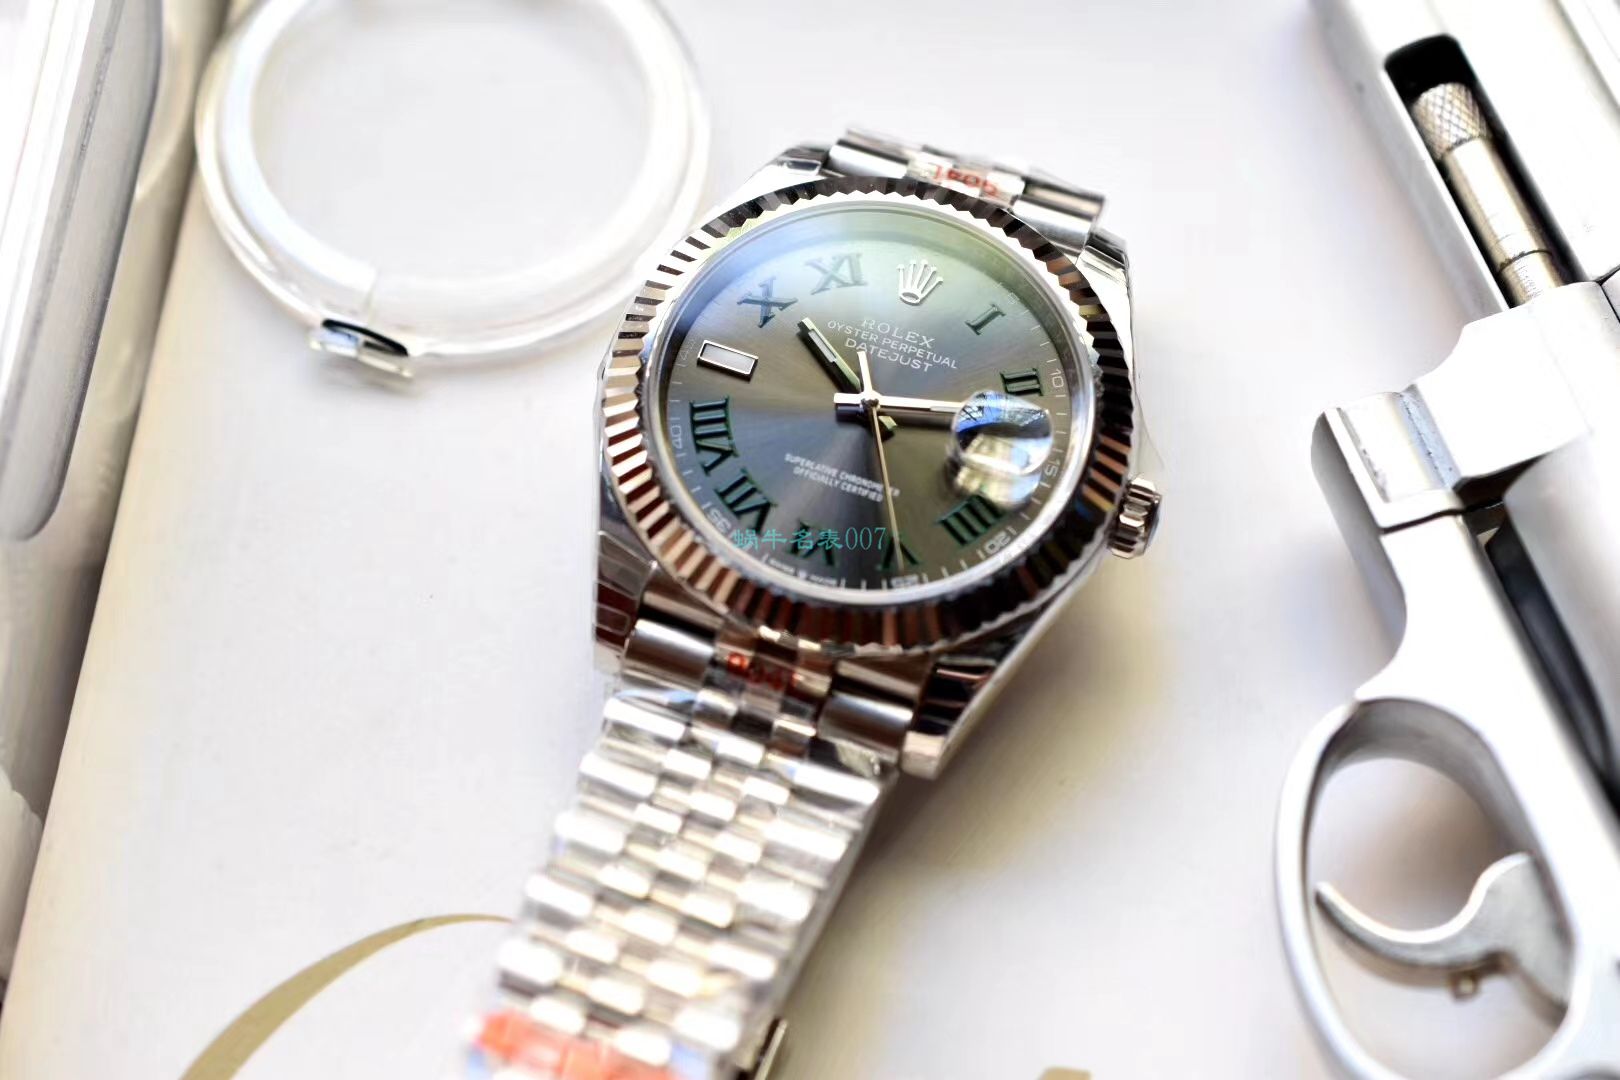 3、成都有没有劳力士手表专卖店？：有人了解劳力士手表吗？哪一个更好？ 